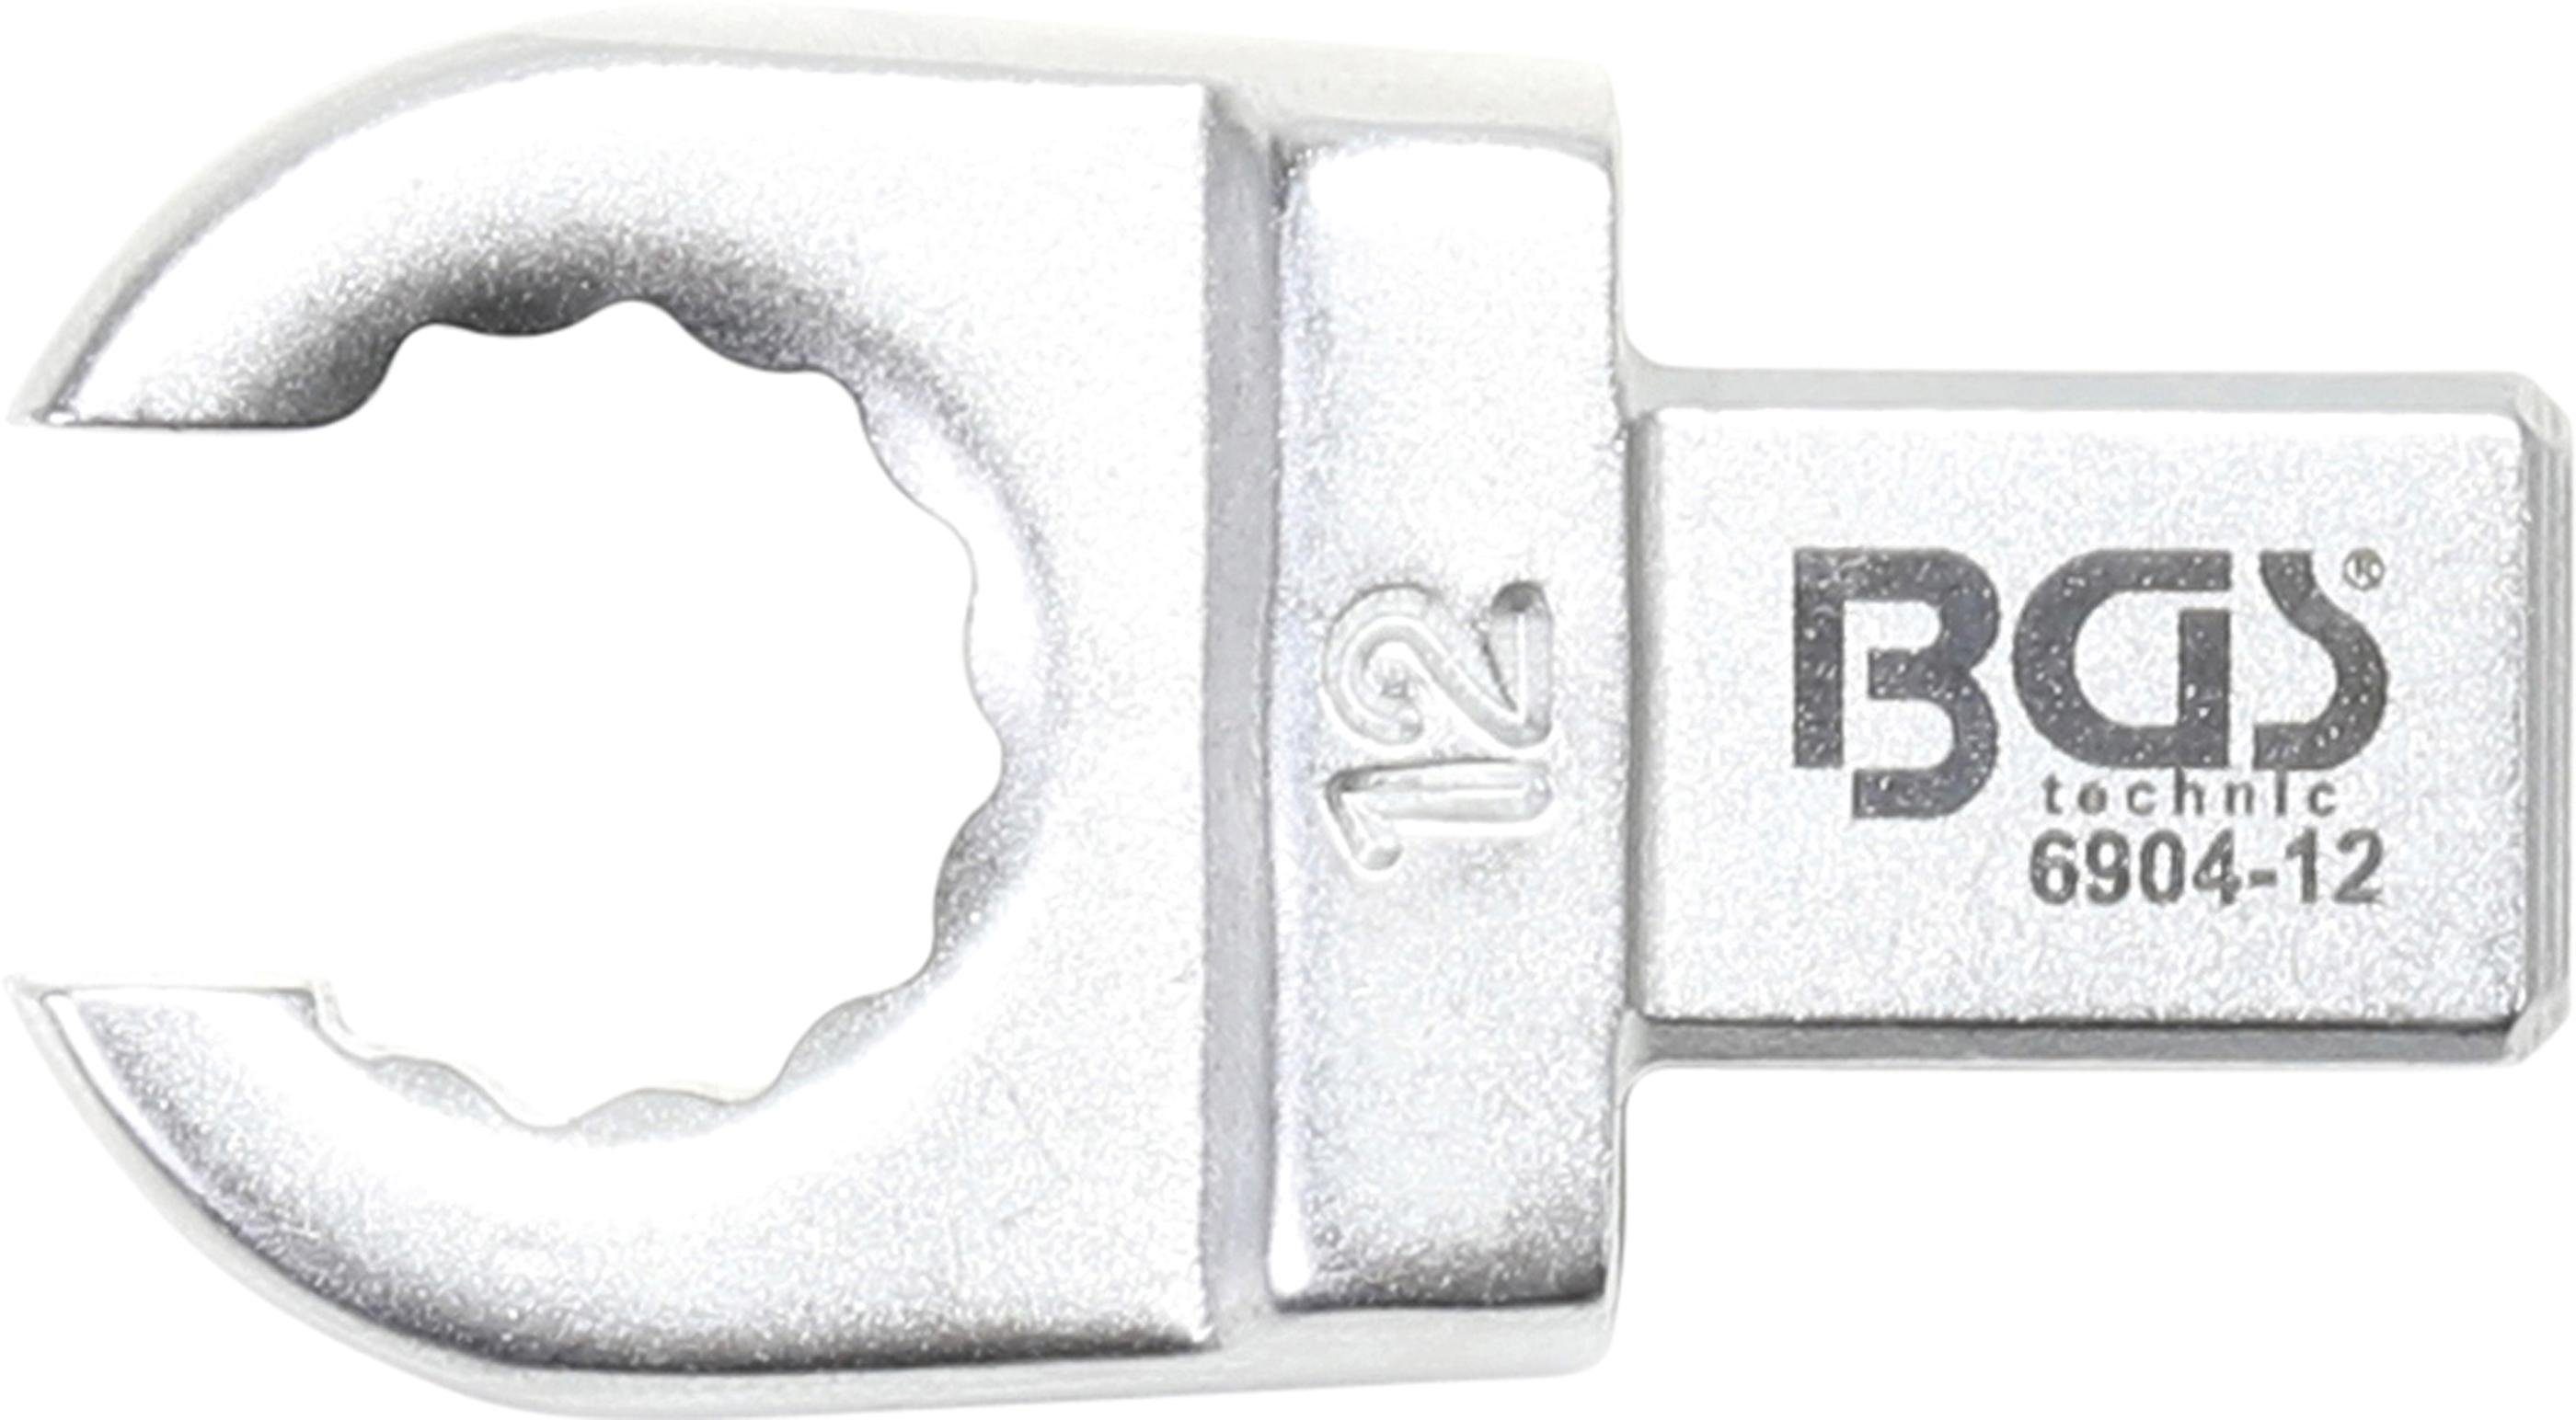 BGS technic Ausstechform Einsteck-Ringschlüssel, offen, 12 mm, Aufnahme 9 x 12 mm